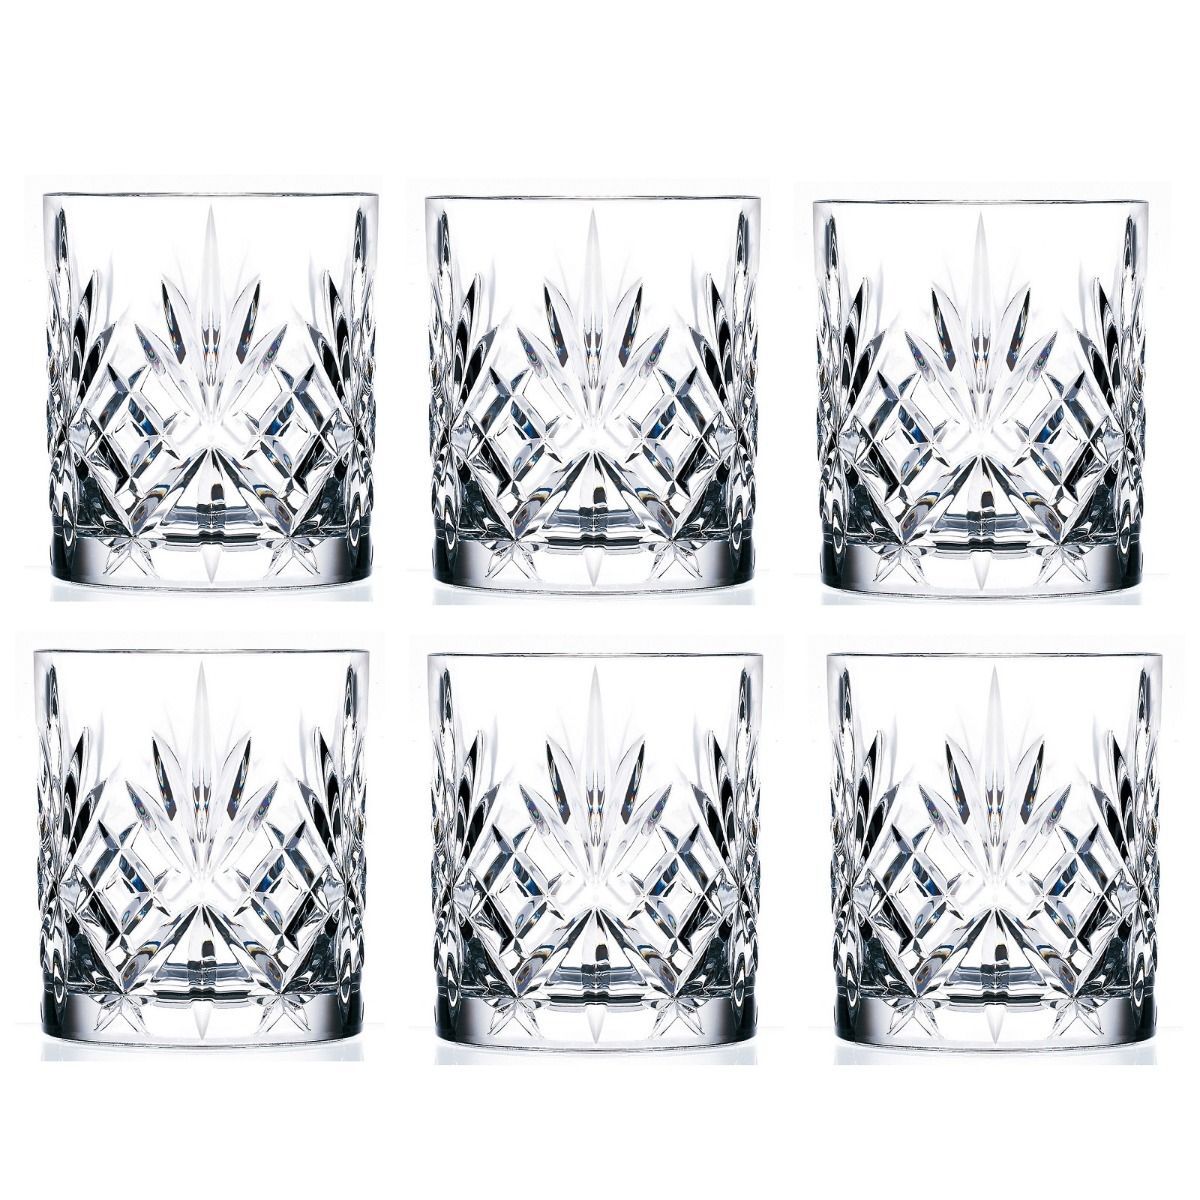 RCR Melodia Crystal Liquor Glasses 310ml - Set Of 6